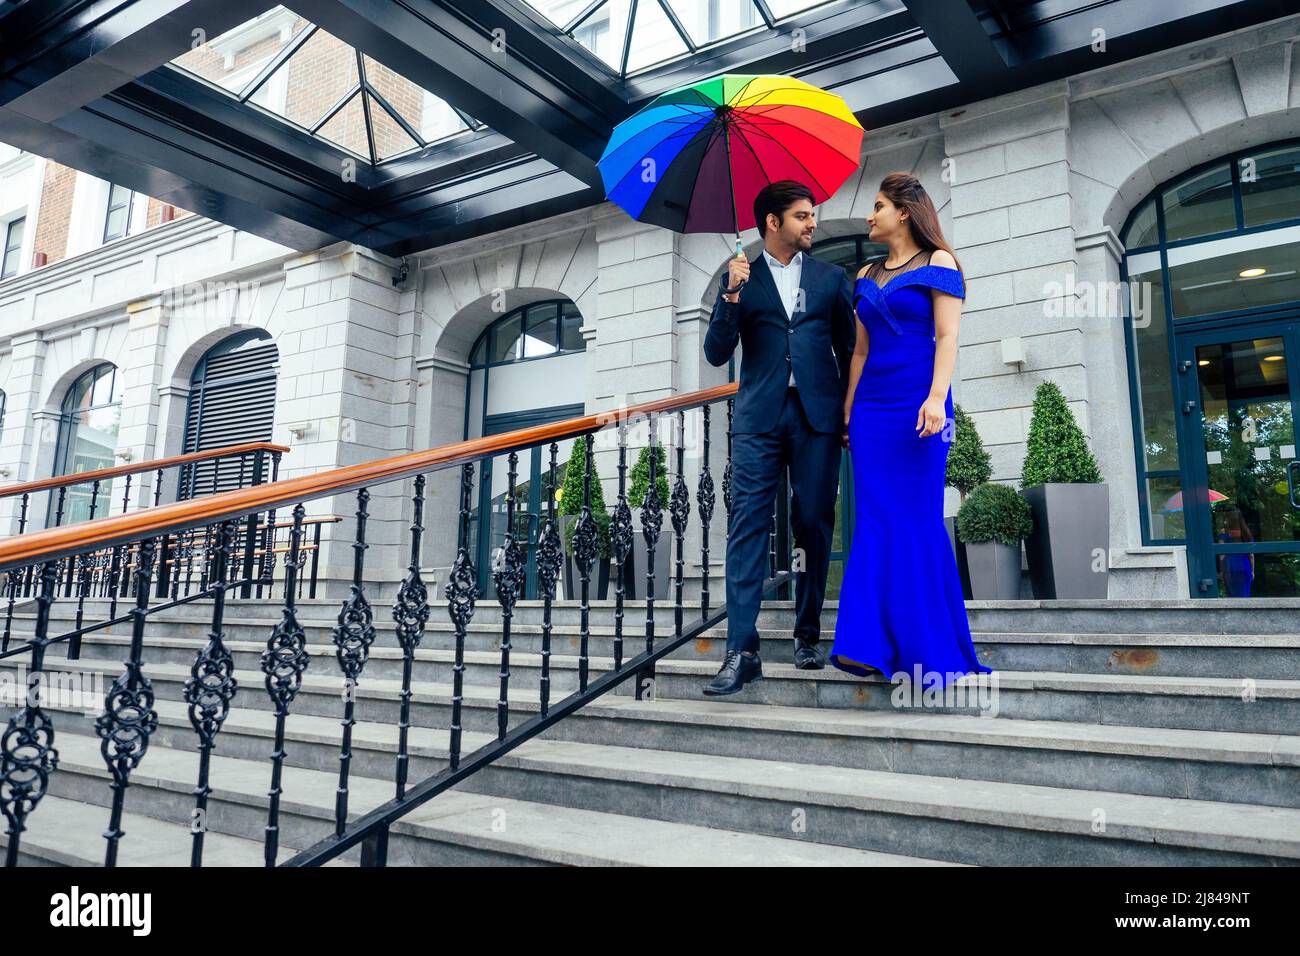 indische Frau in langen Abend blau Kleid Spinnen romantische Zeit zusammen mit Liebhaber schöner Freund unter bunten Regenbogen Regenschirm europa Stockfoto